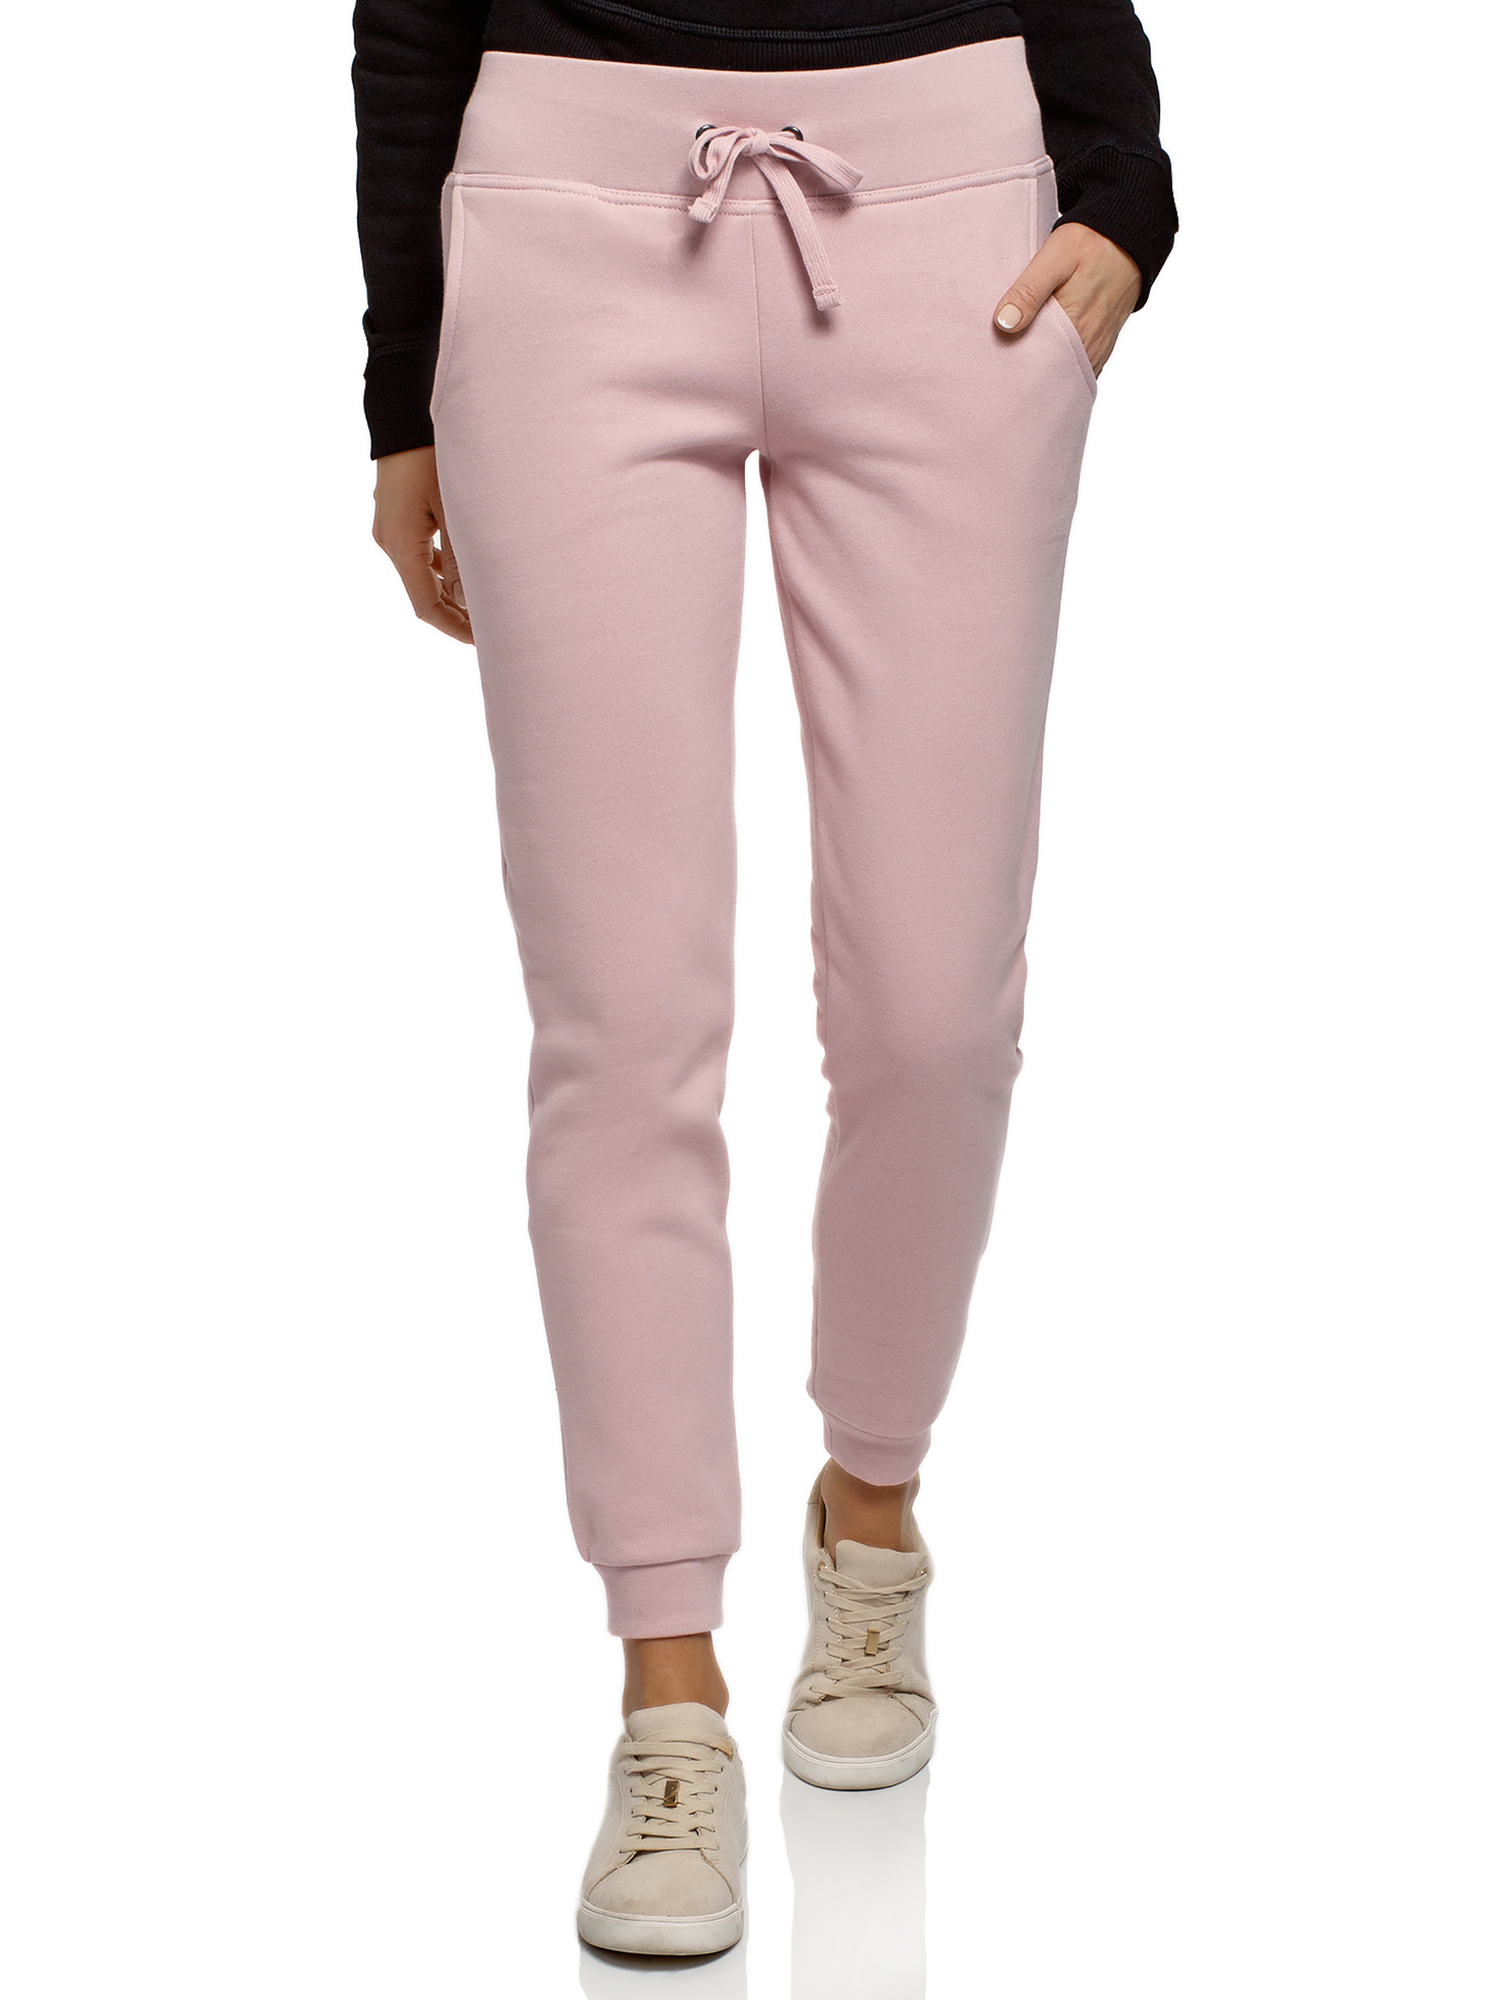 Спортивные брюки женские oodji 16700030-25B розовые XS